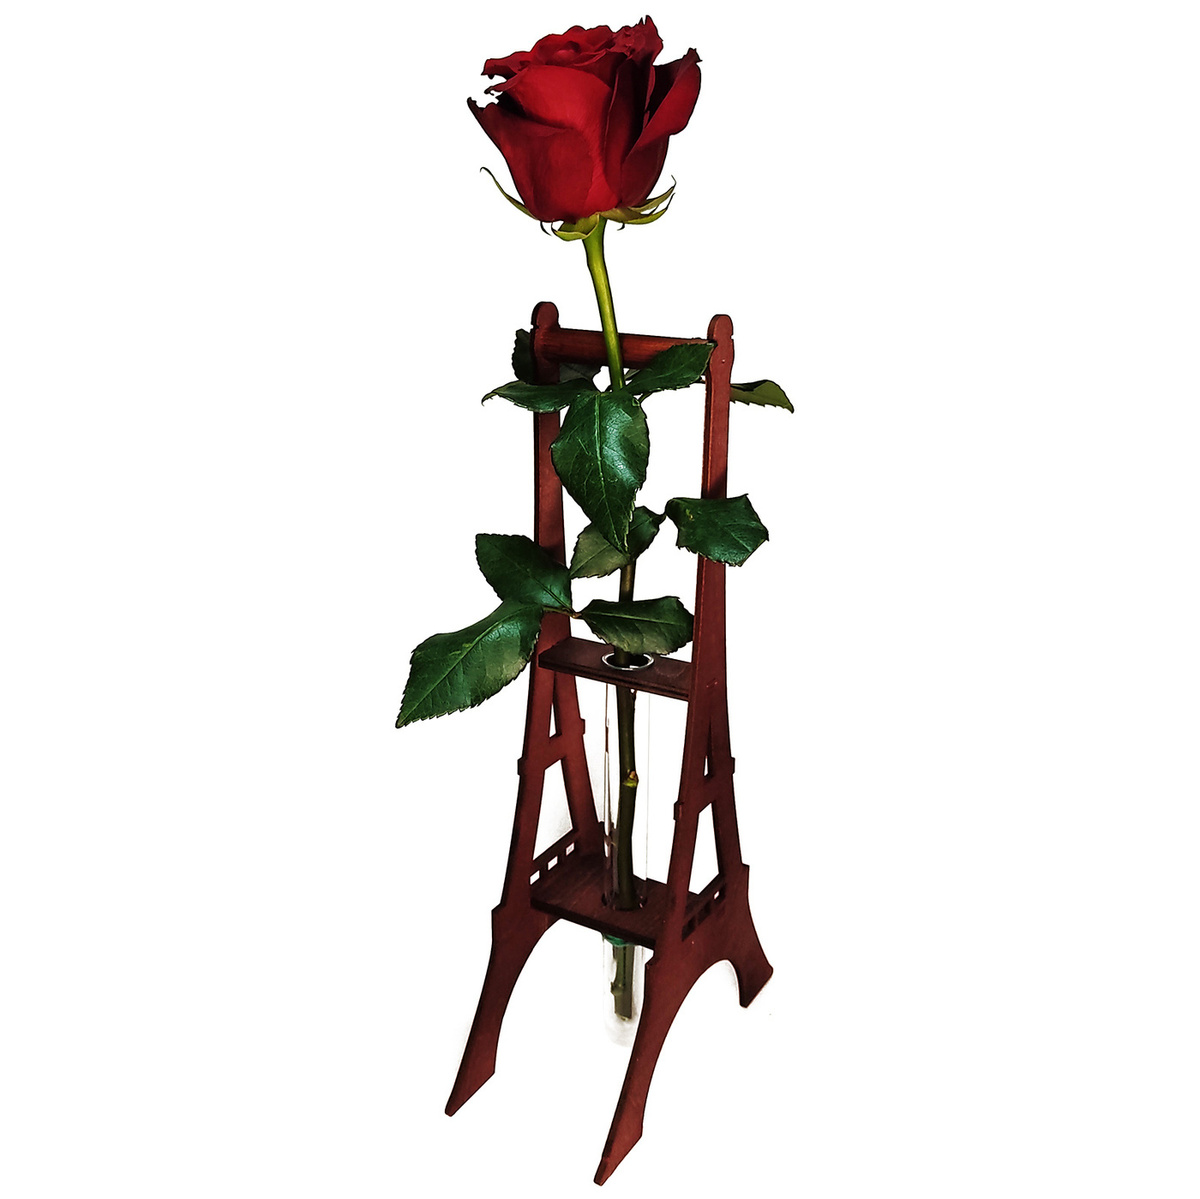 Роза Эйфелева Башня Фото